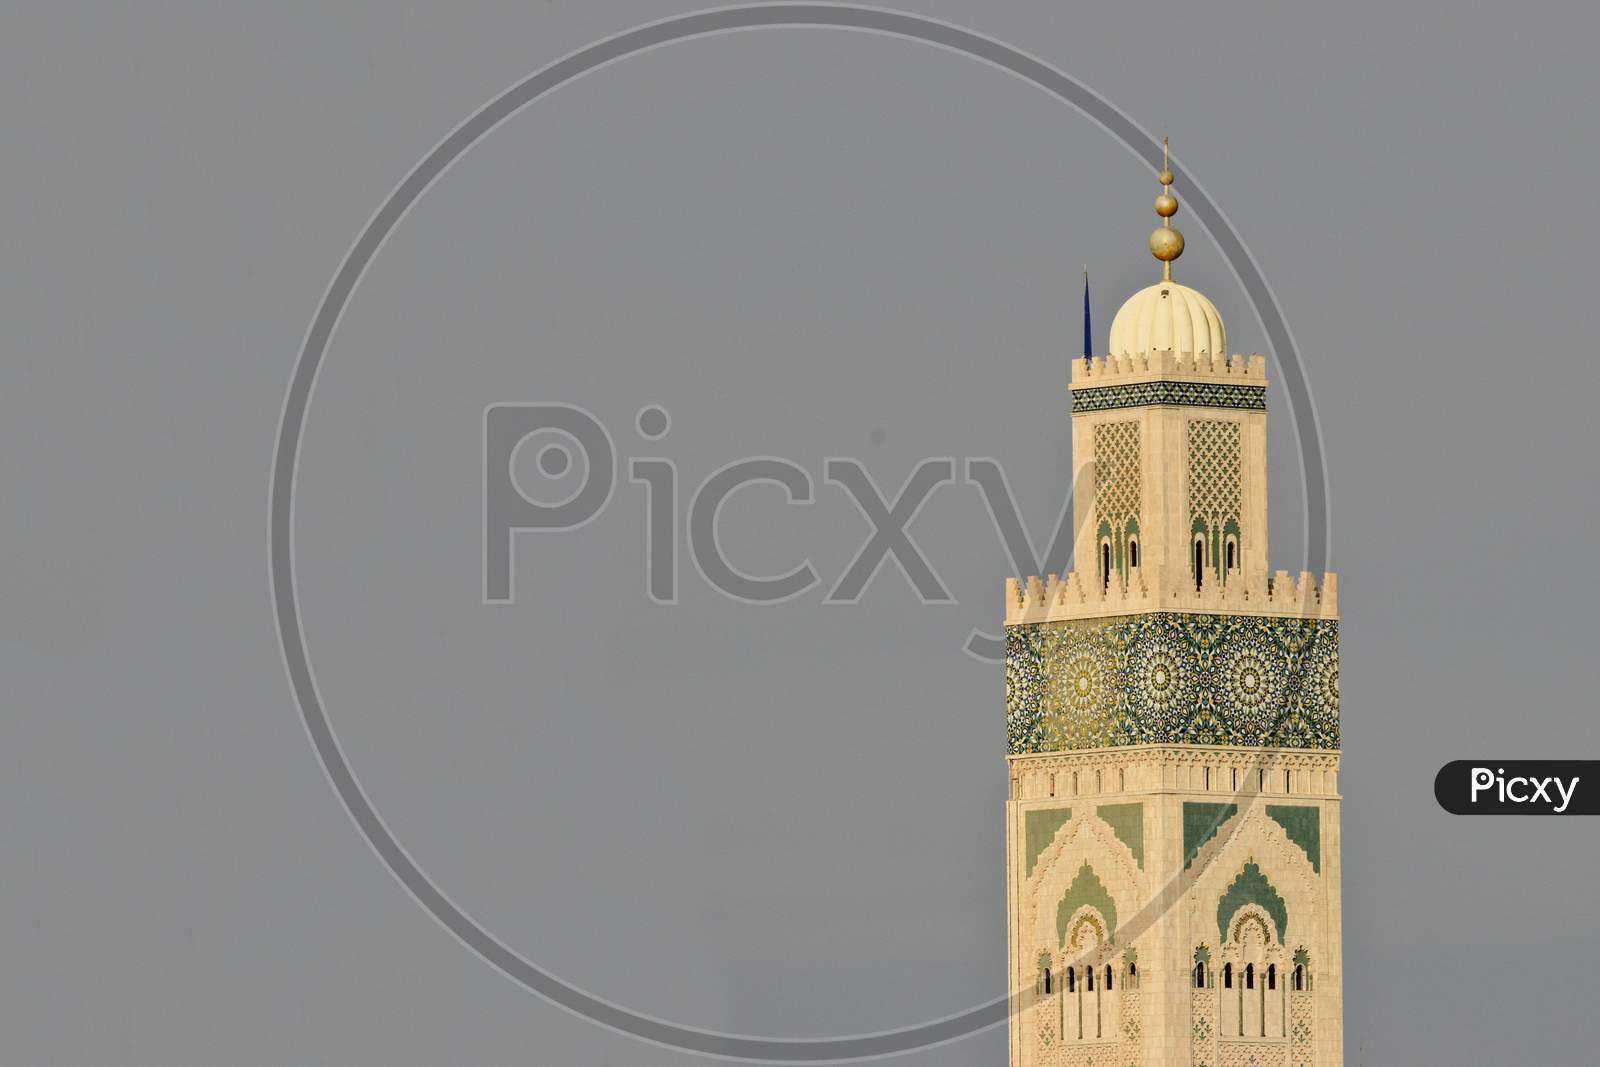 Minaret of mosque